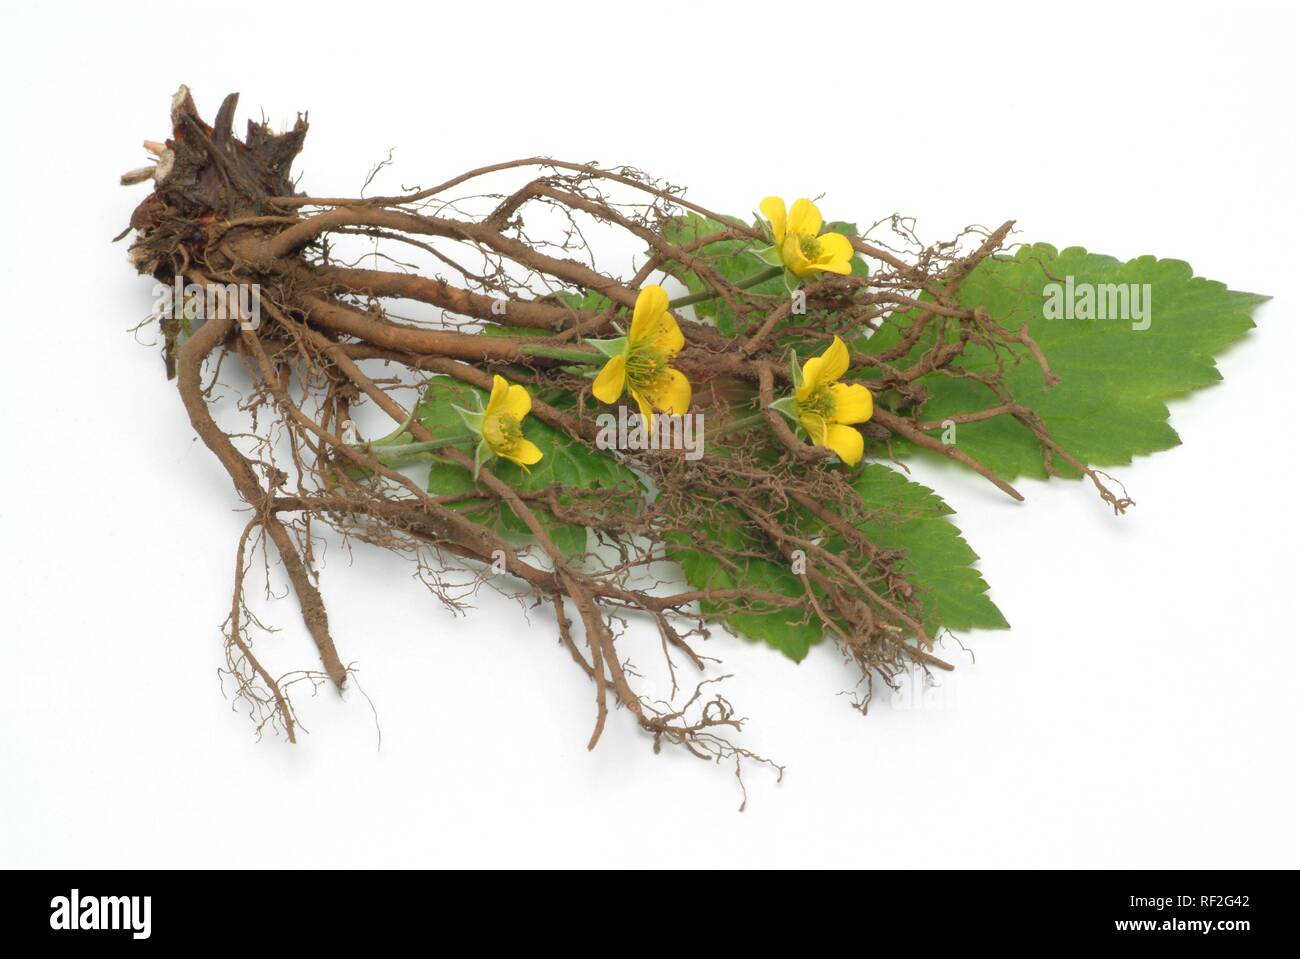 Tormentil or Septifoil (Potentilla erecta, Potentilla tormentilla), medicinal plant Stock Photo